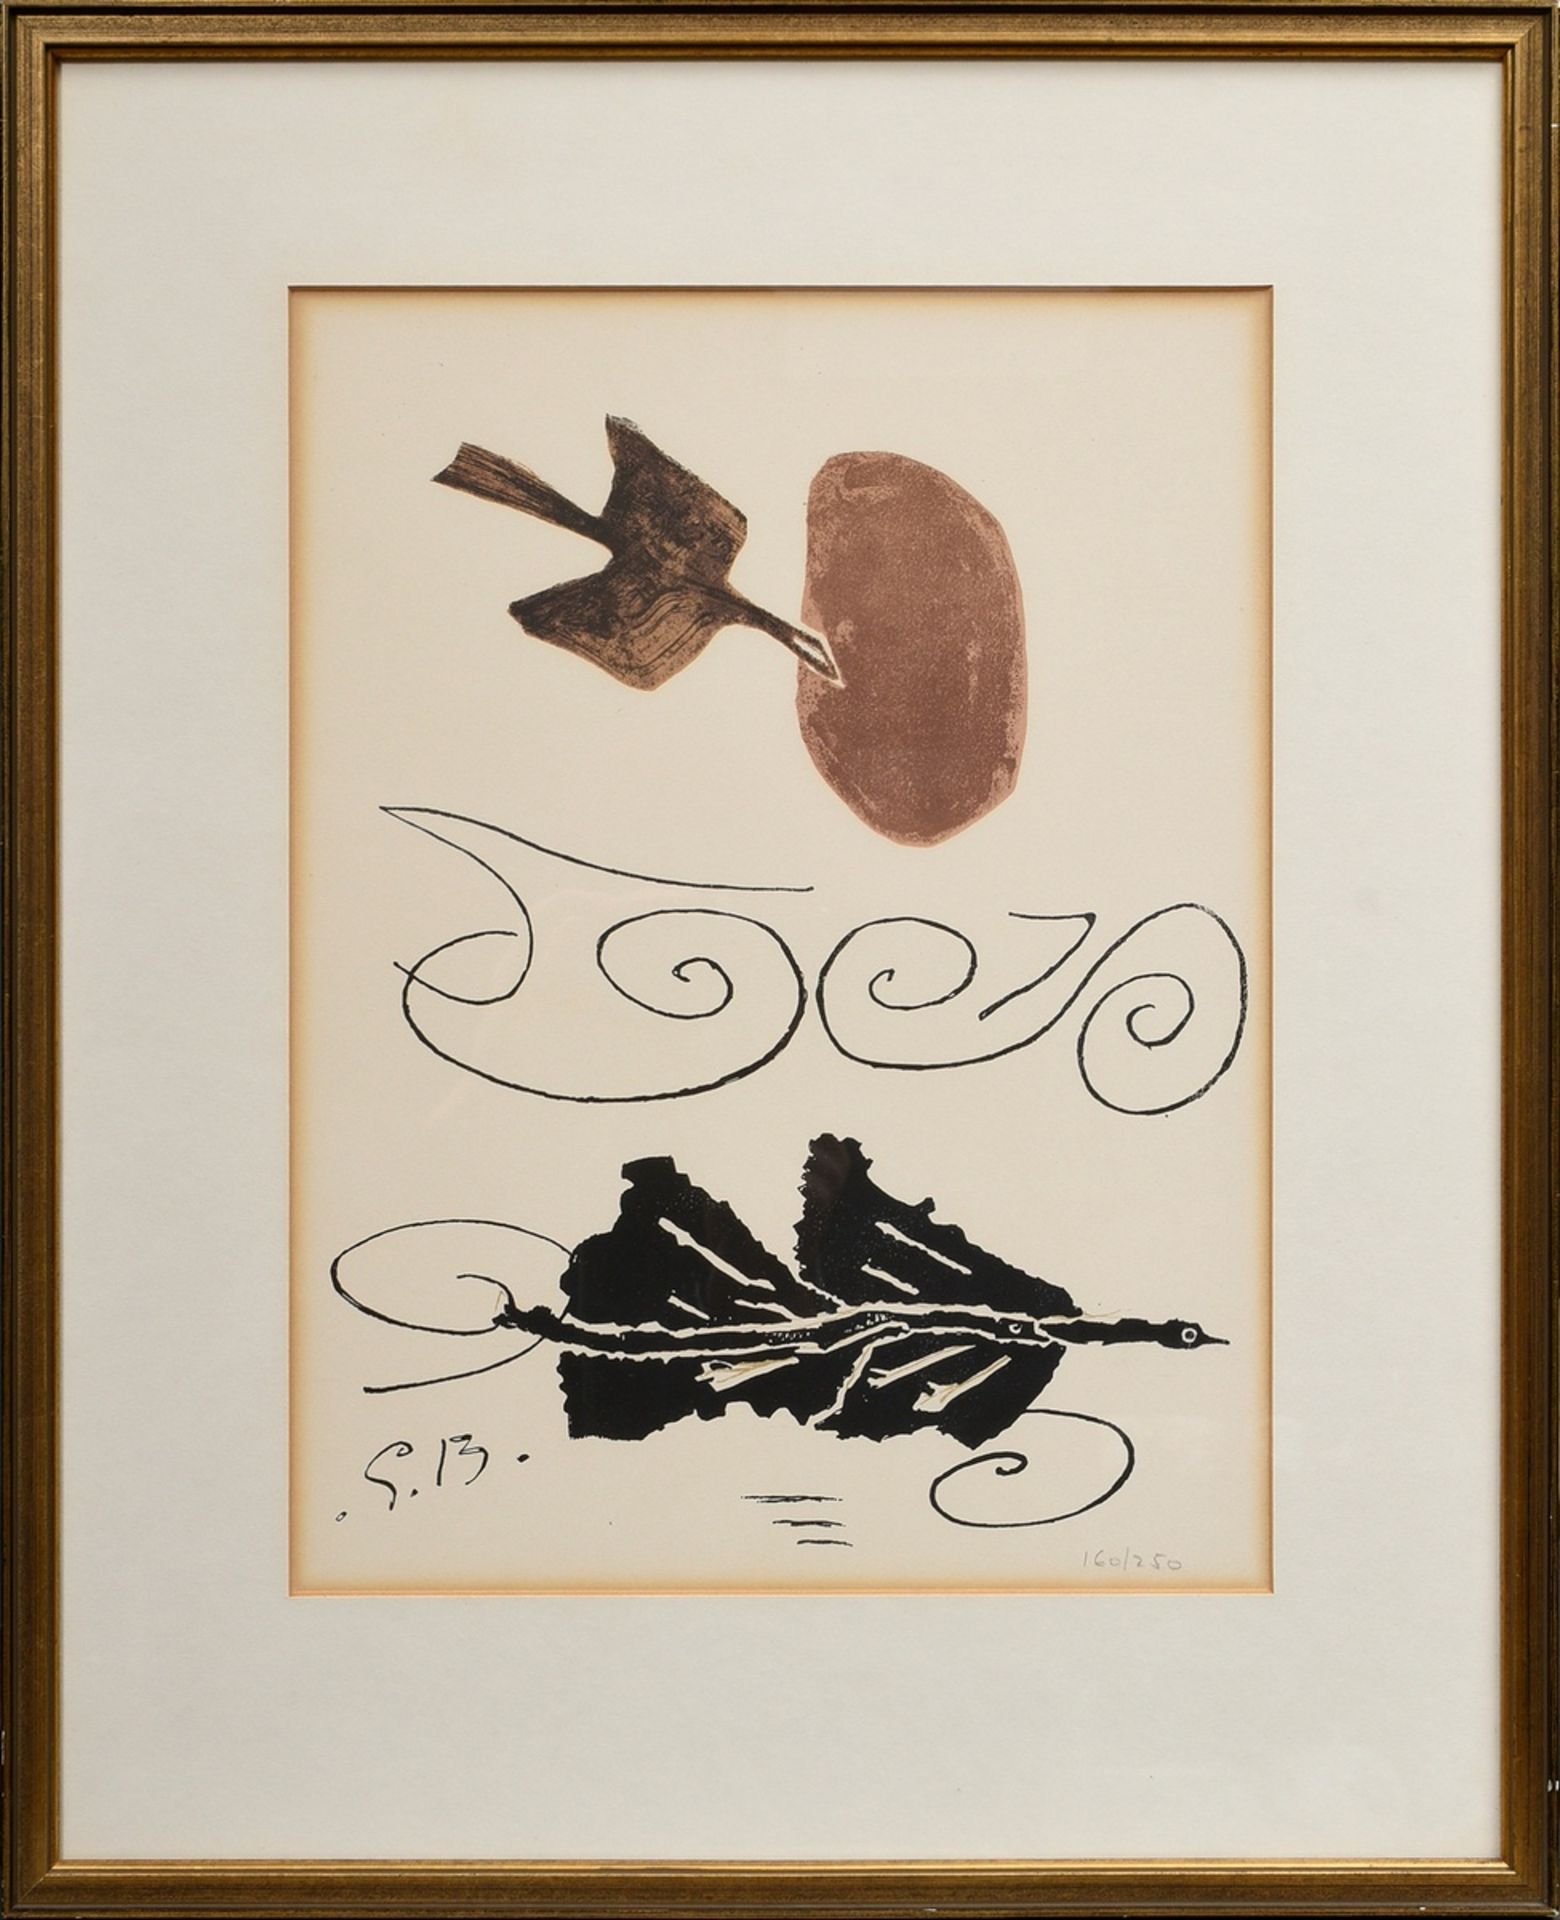 Braque, Georges (1882-1963) "Composition IV" 1956, lithograph, 160/250, from: "Derrière le Miroir",